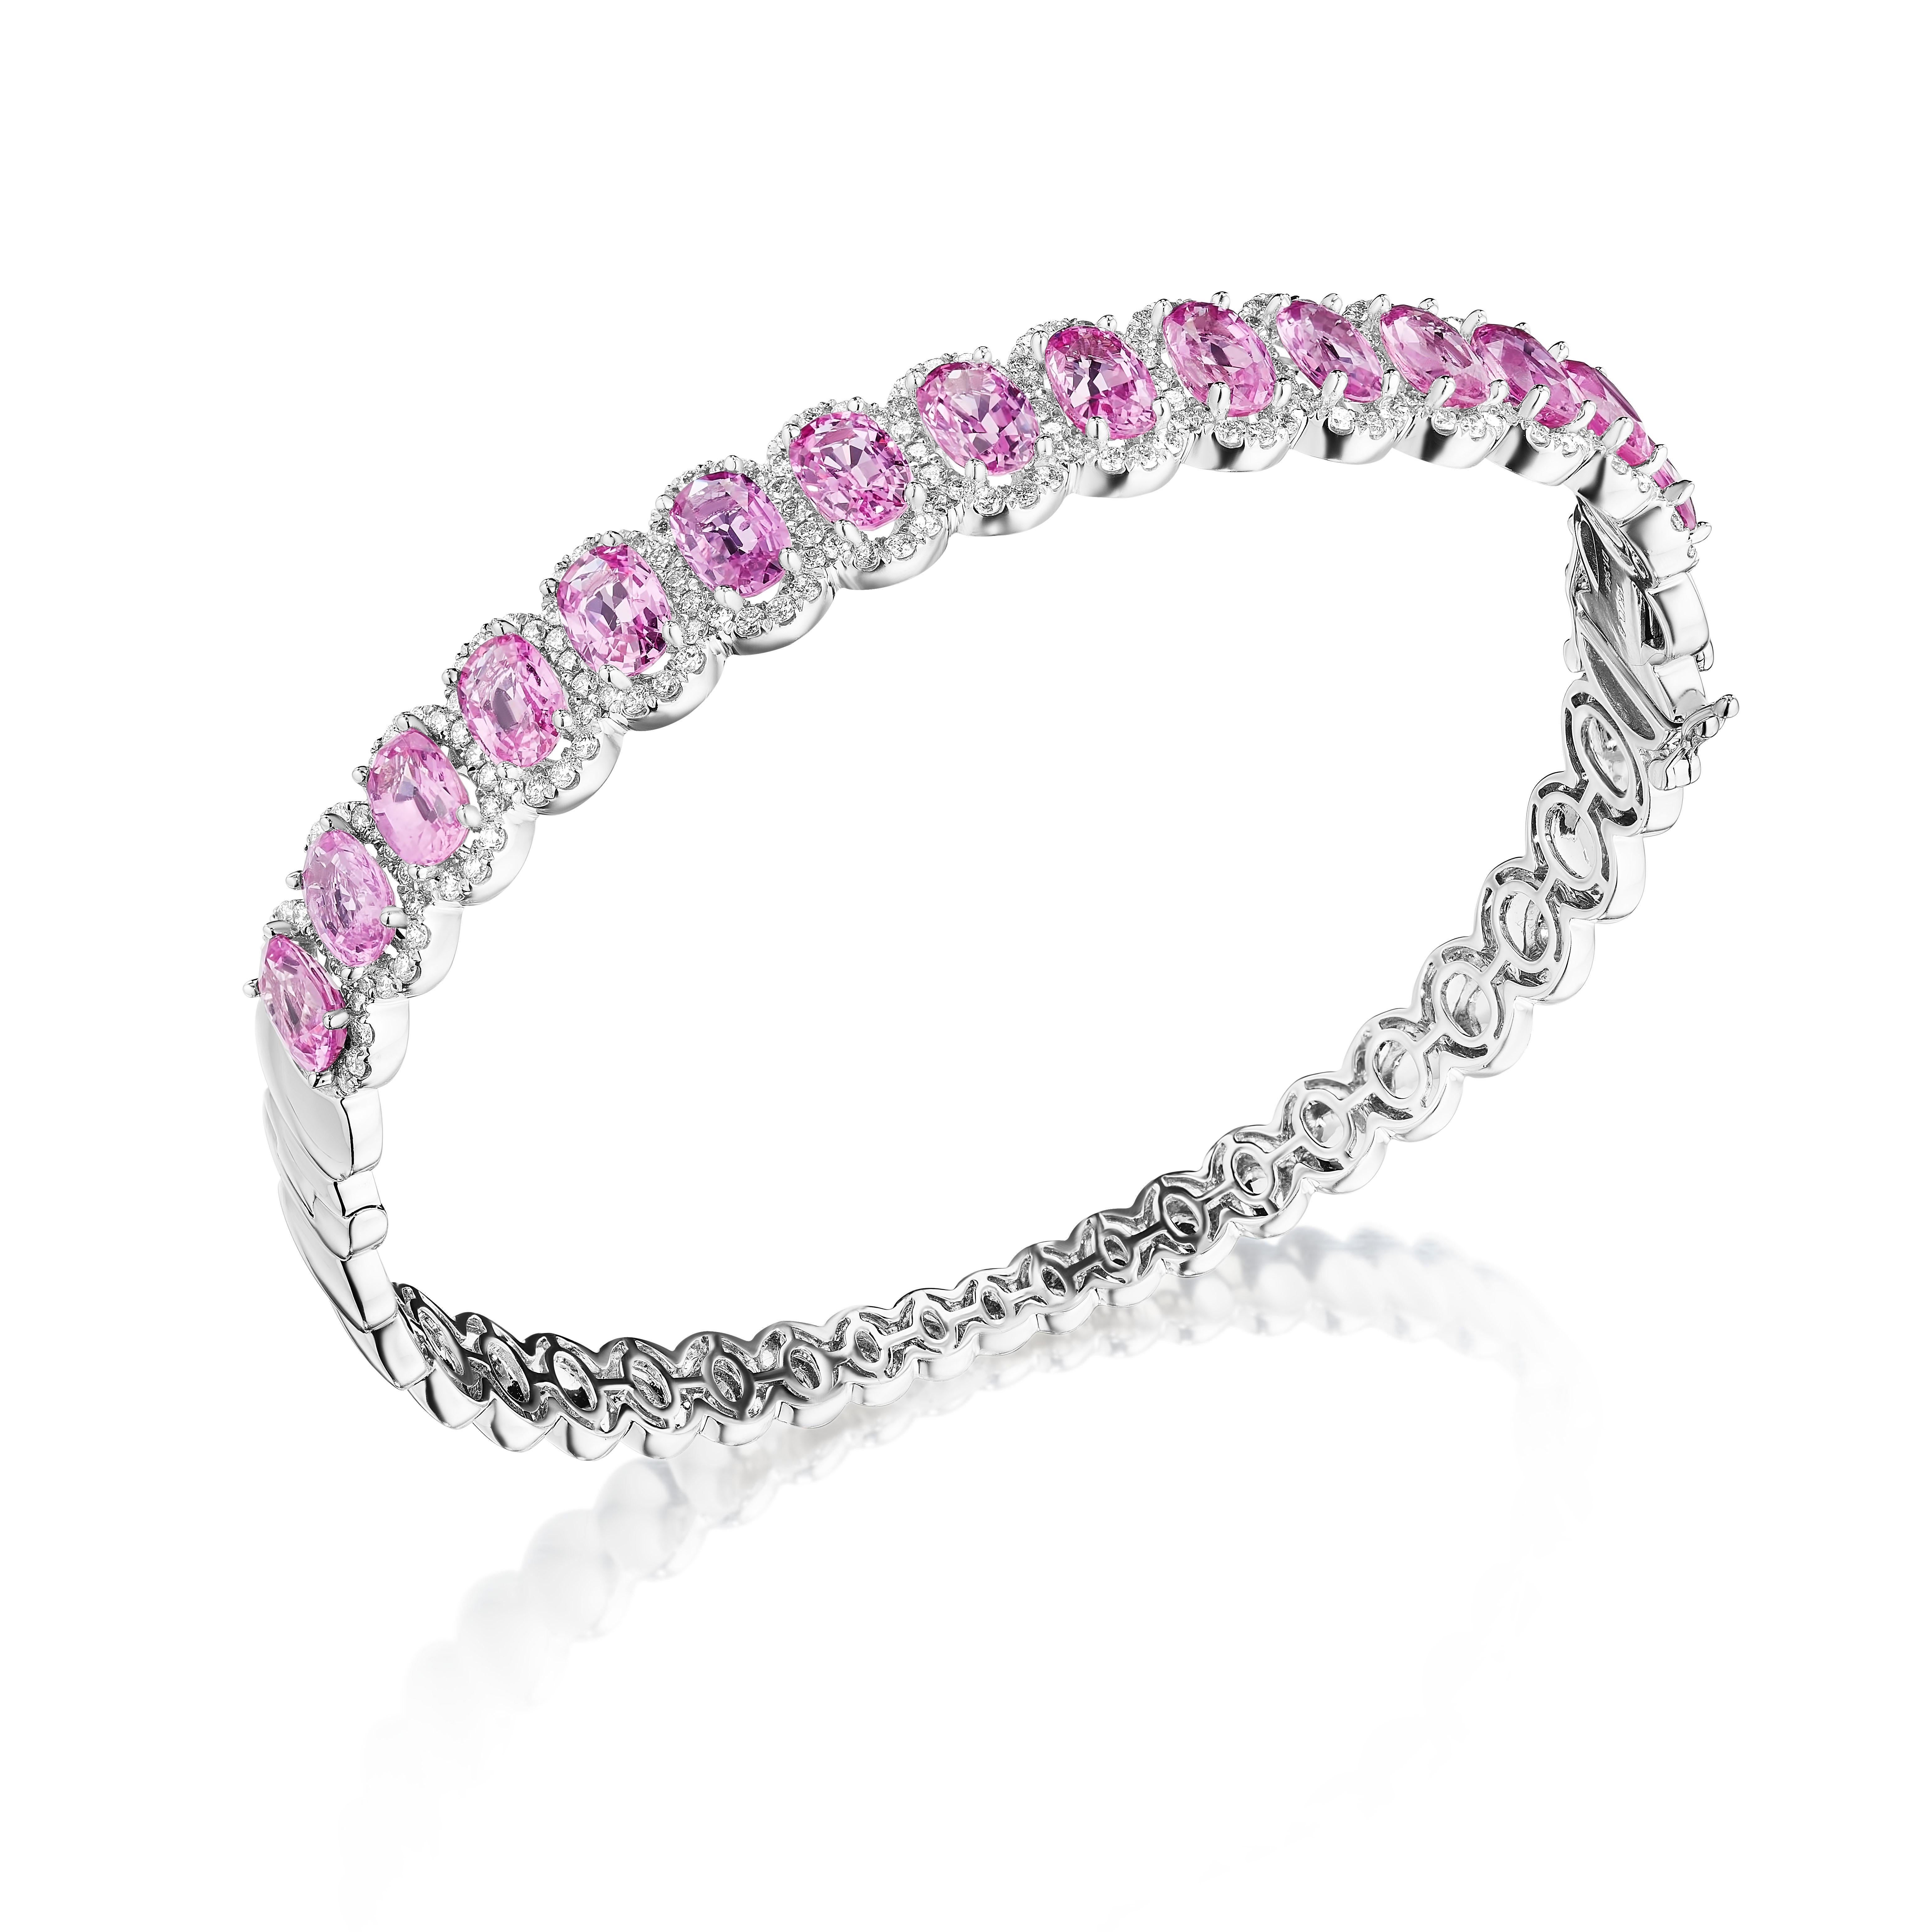 - • Eine wahrhaft exquisite Zusammenstellung von 15 oval geschliffenen rosafarbenen Saphiren wird bei diesem wunderschönen Armreif von zarten Halos aus runden Diamanten im Brillantschliff eingerahmt. Die Steine sind in 14KT Weißgold gefasst und